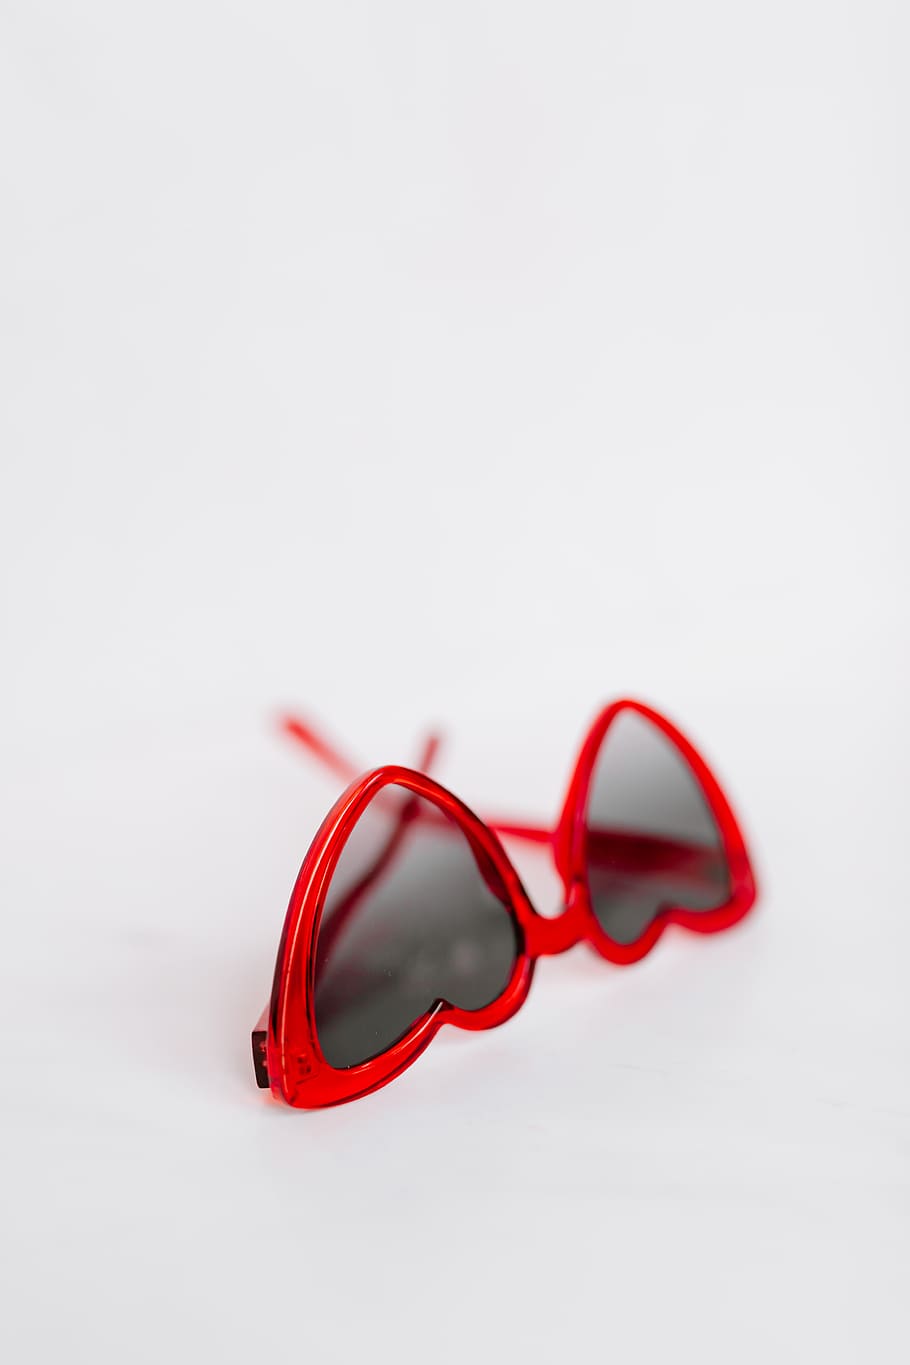 gafas de sol, rojo, gafas, gracioso, accesorios, moda, amor, valentines, corazón, en forma